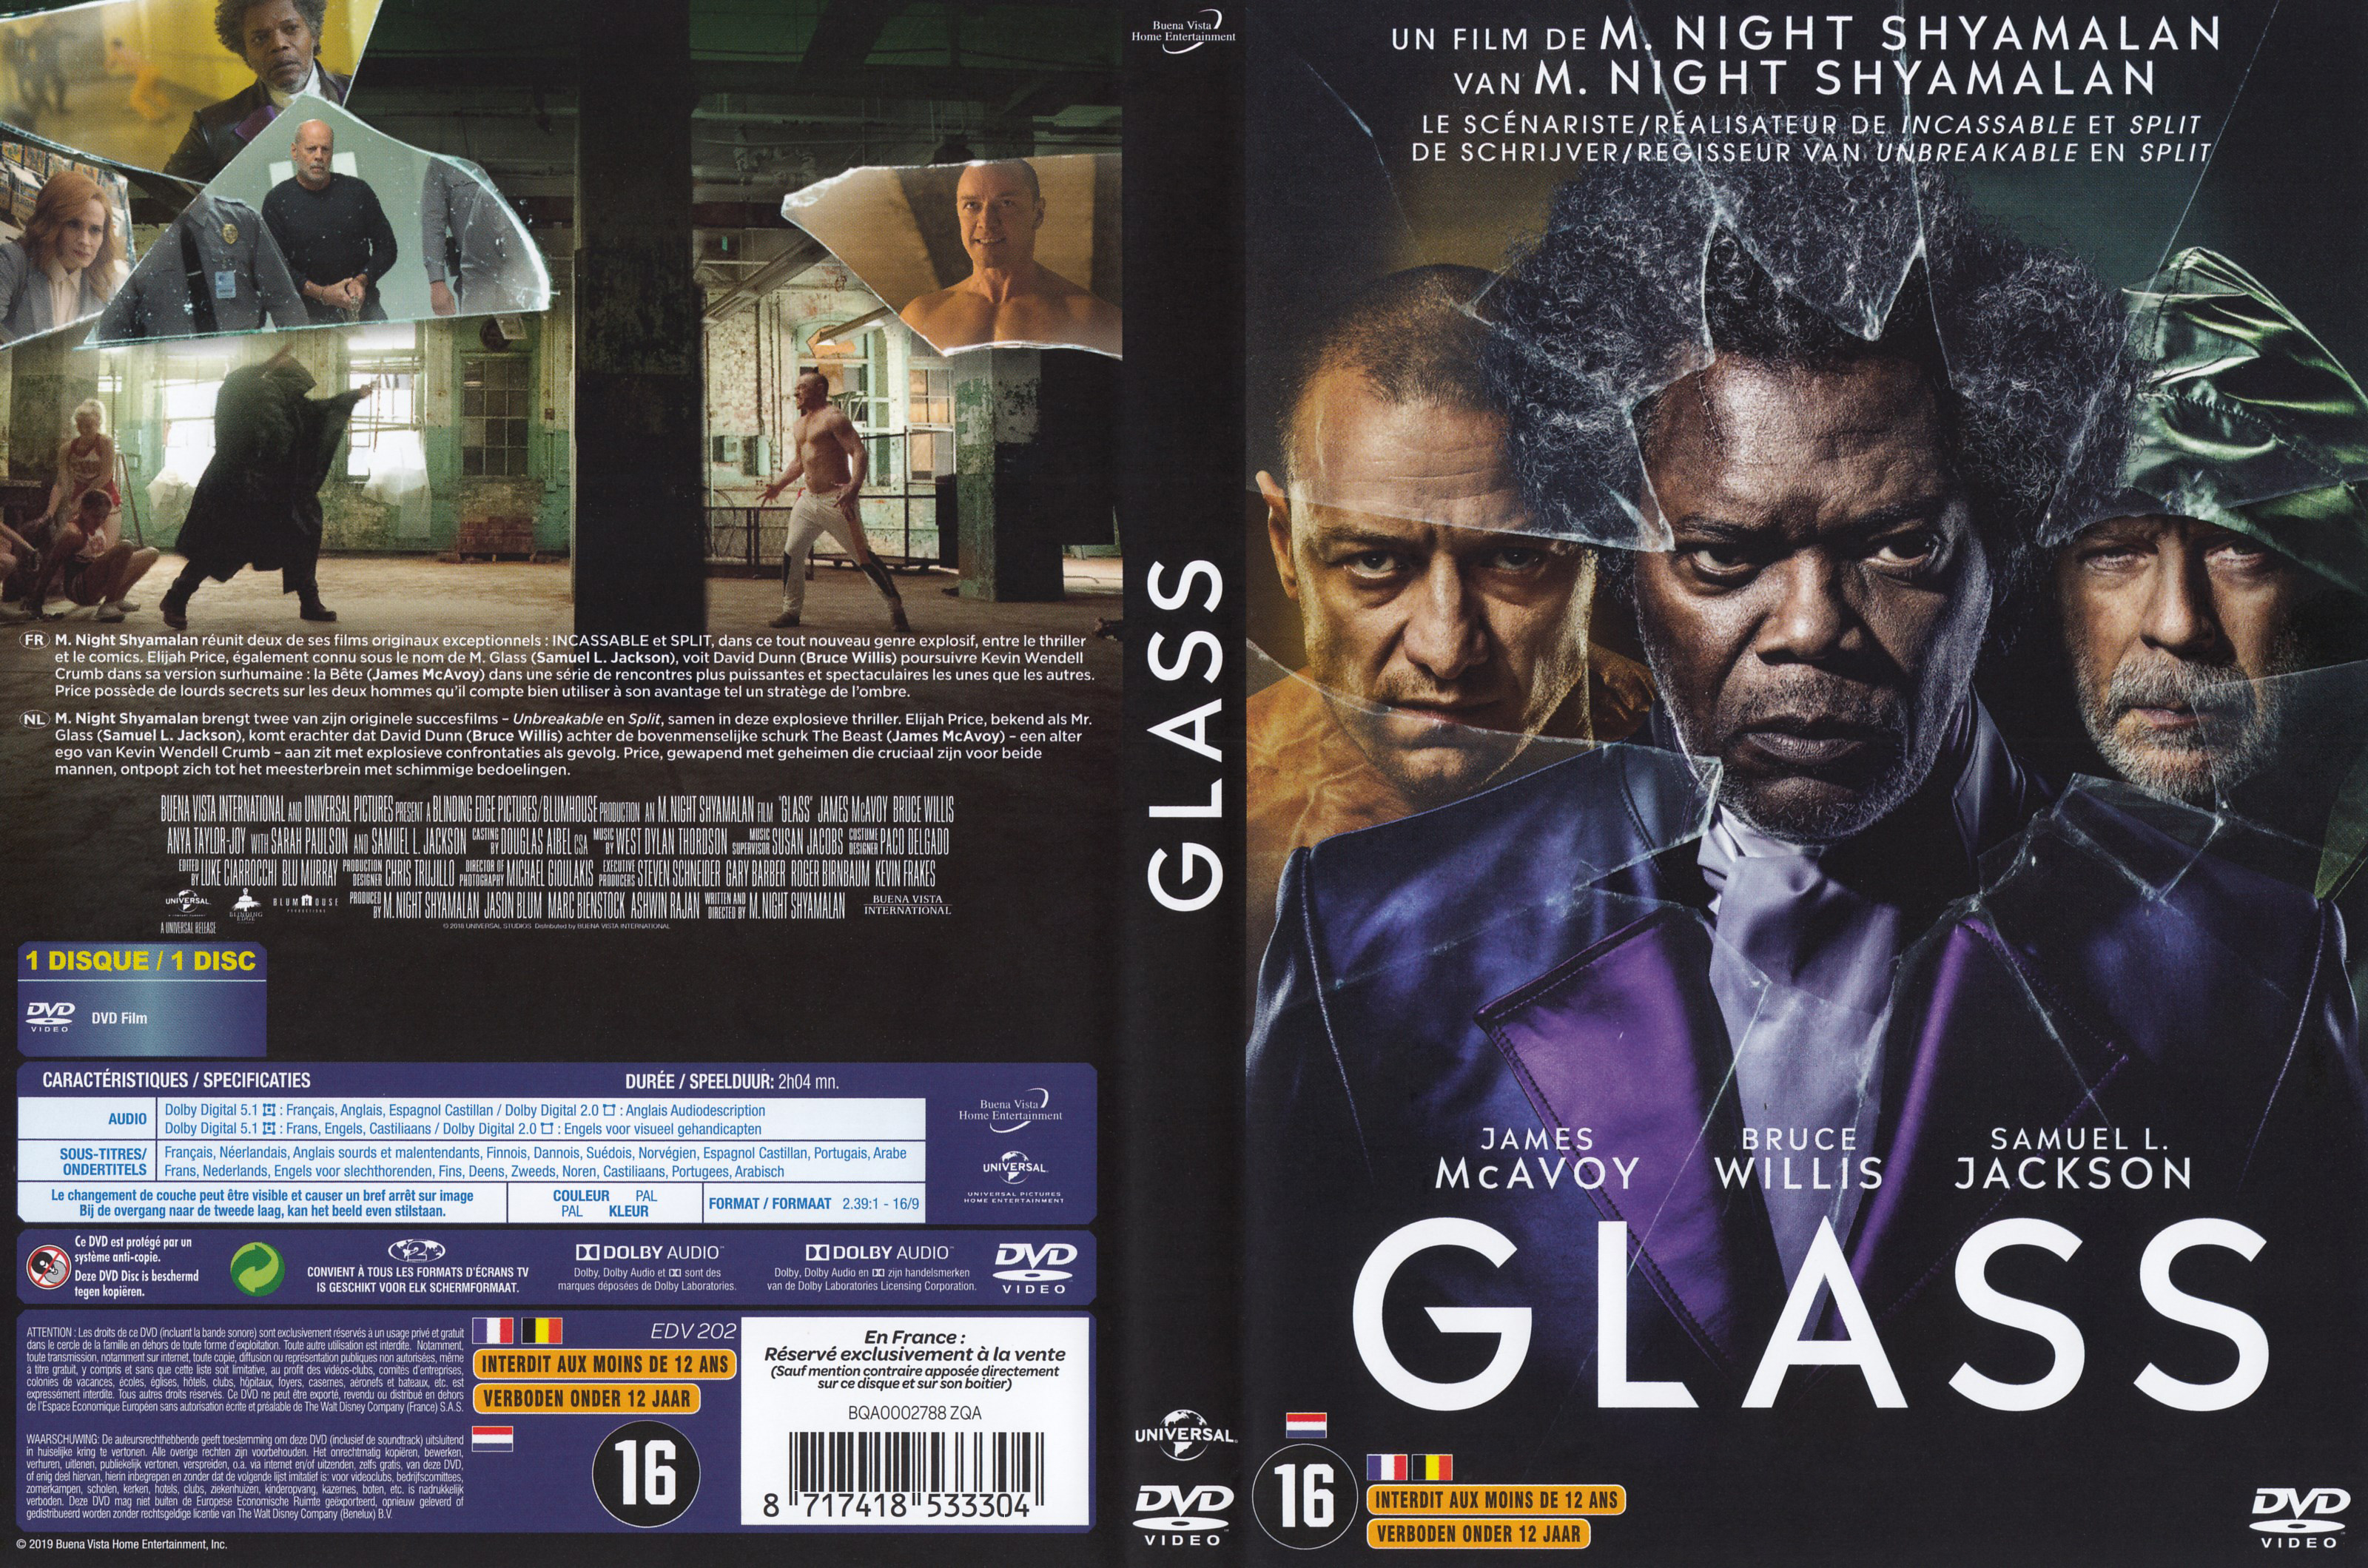 Jaquette DVD de Glass - Cinéma Passion